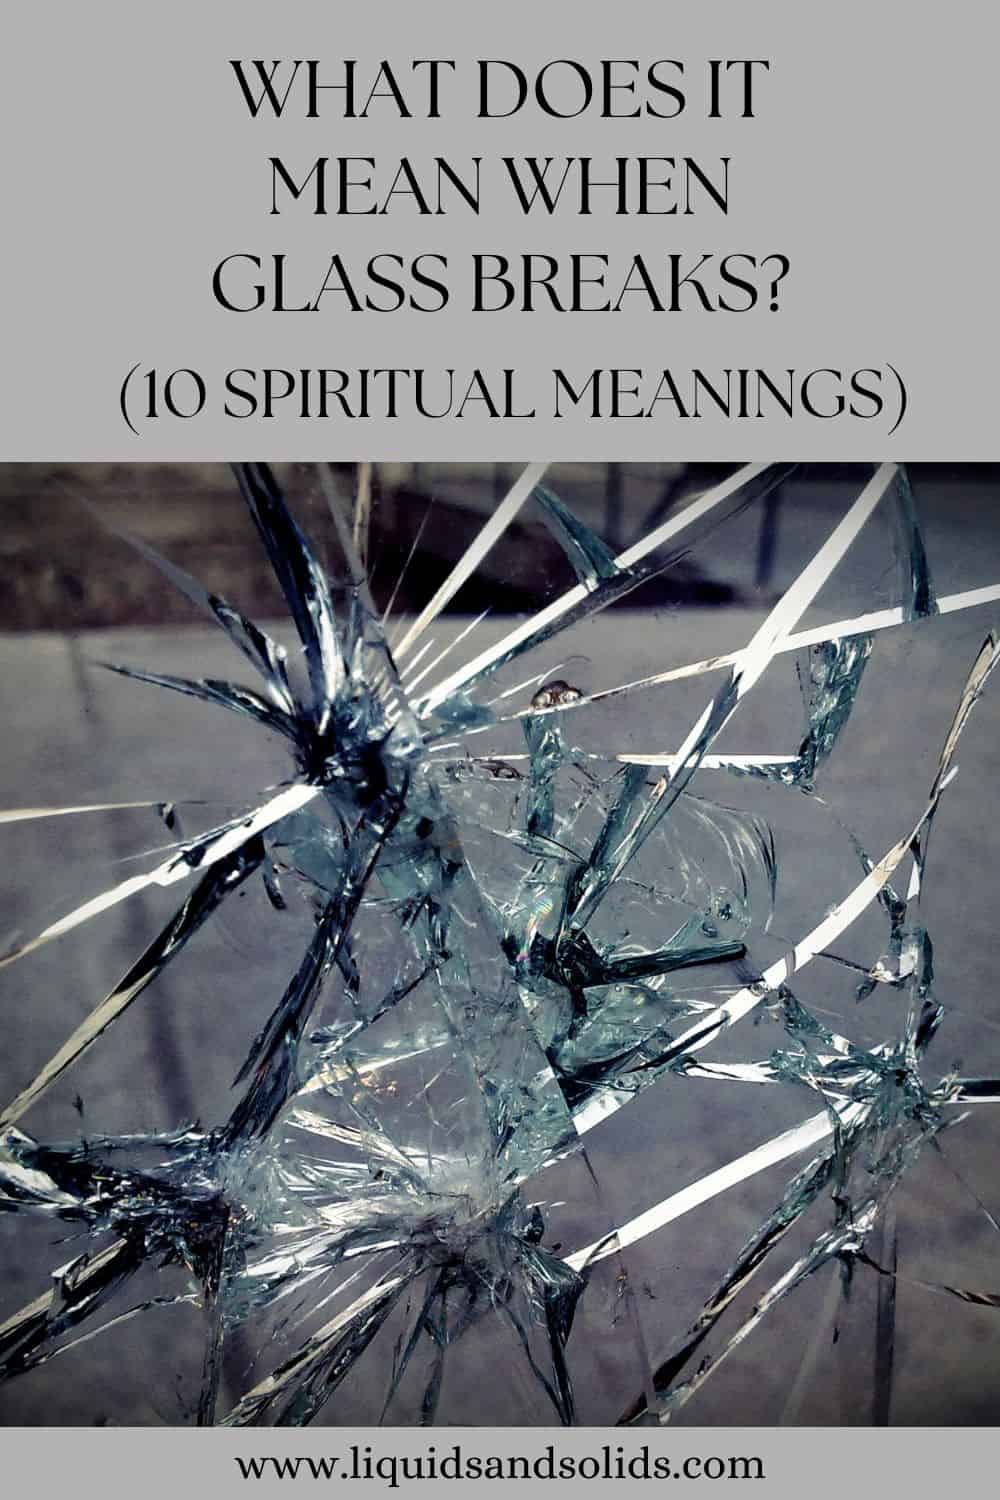  Ce que signifie le bris de verre (10 significations spirituelles)